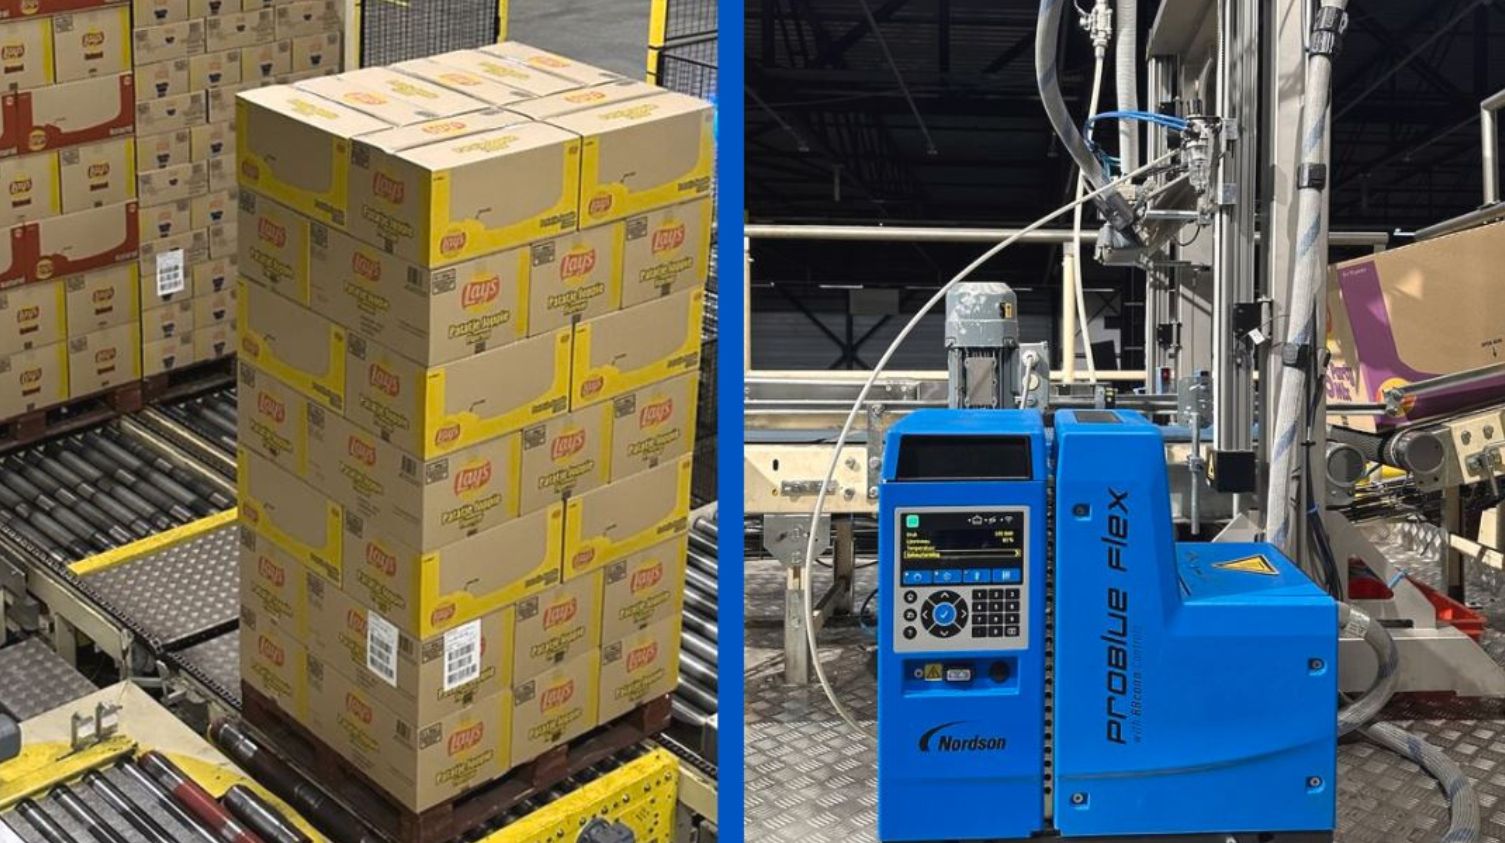 Hotmelt-technologie van Nordson voor gestapelde dozen van PepsiCo